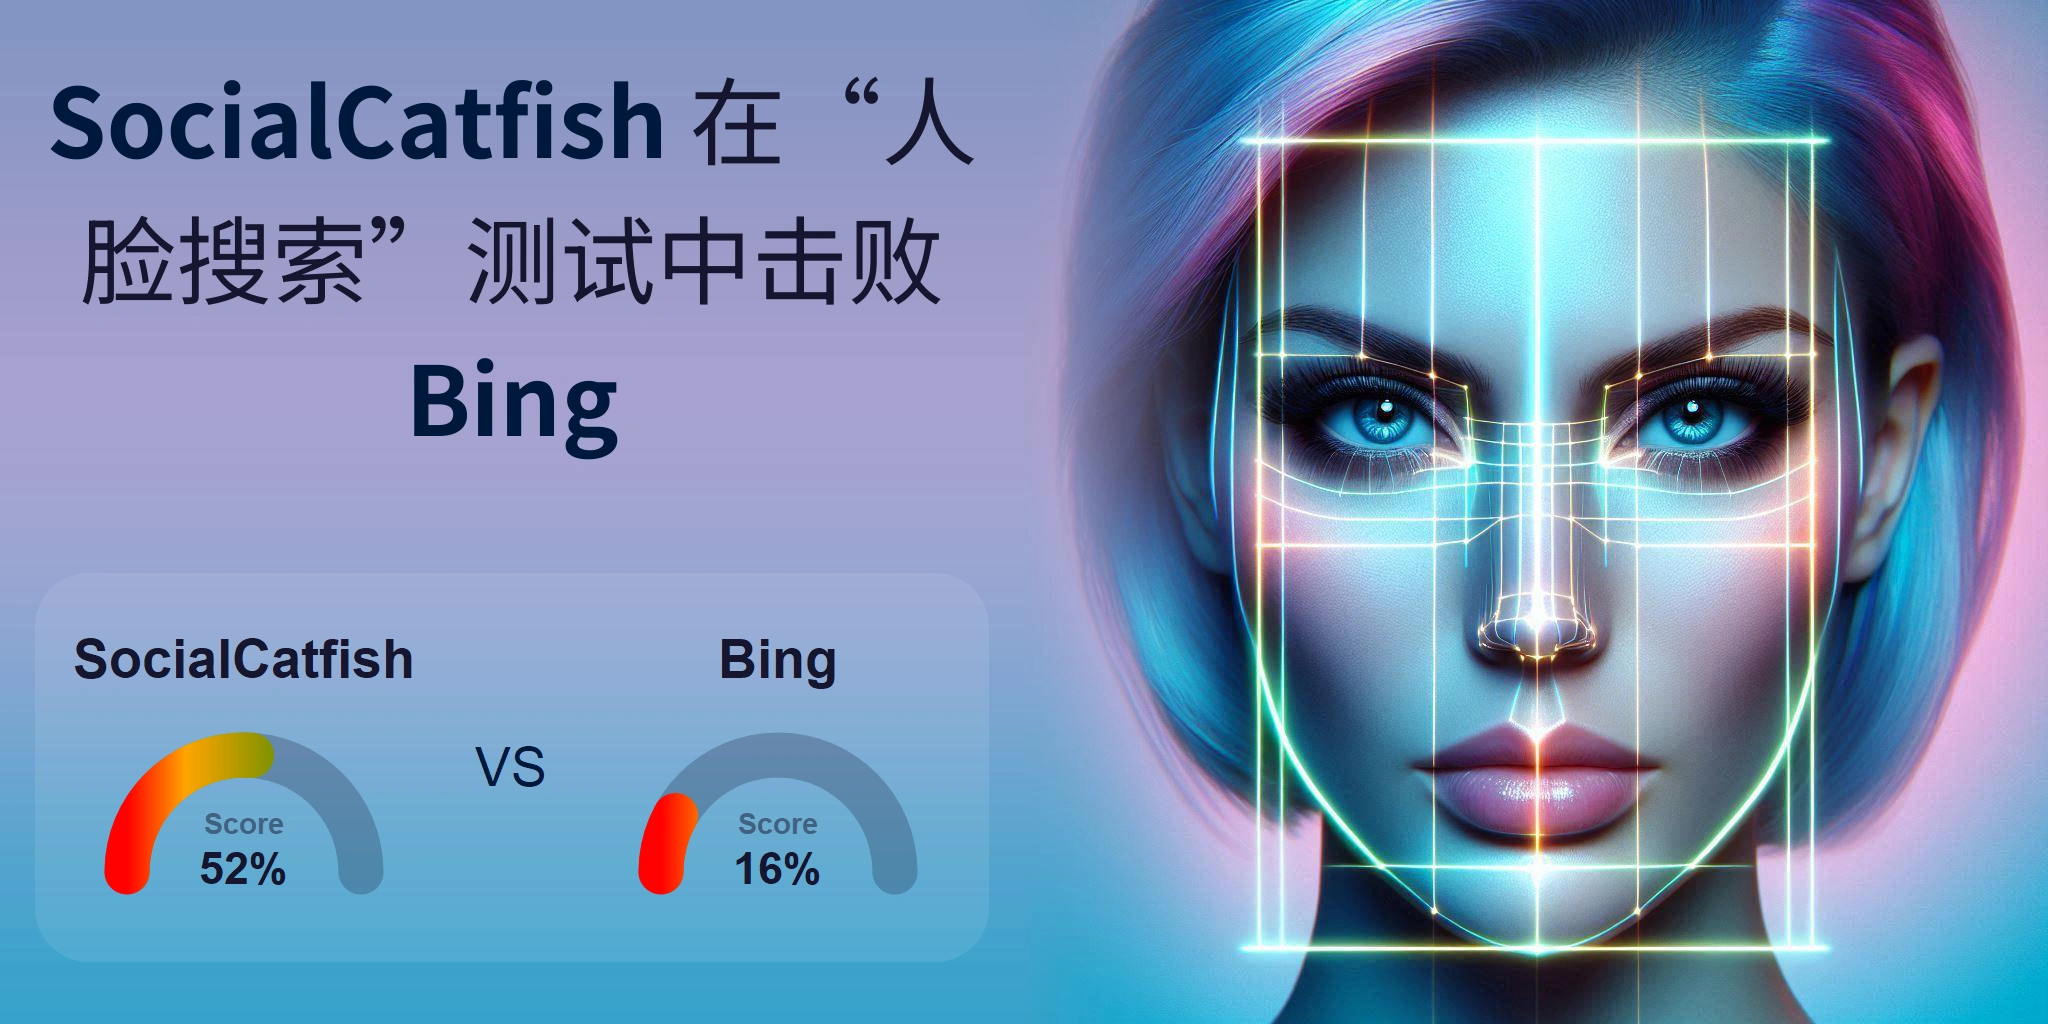 哪一个更适合人脸搜索：<br>Bing 还是 SocialCatfish？